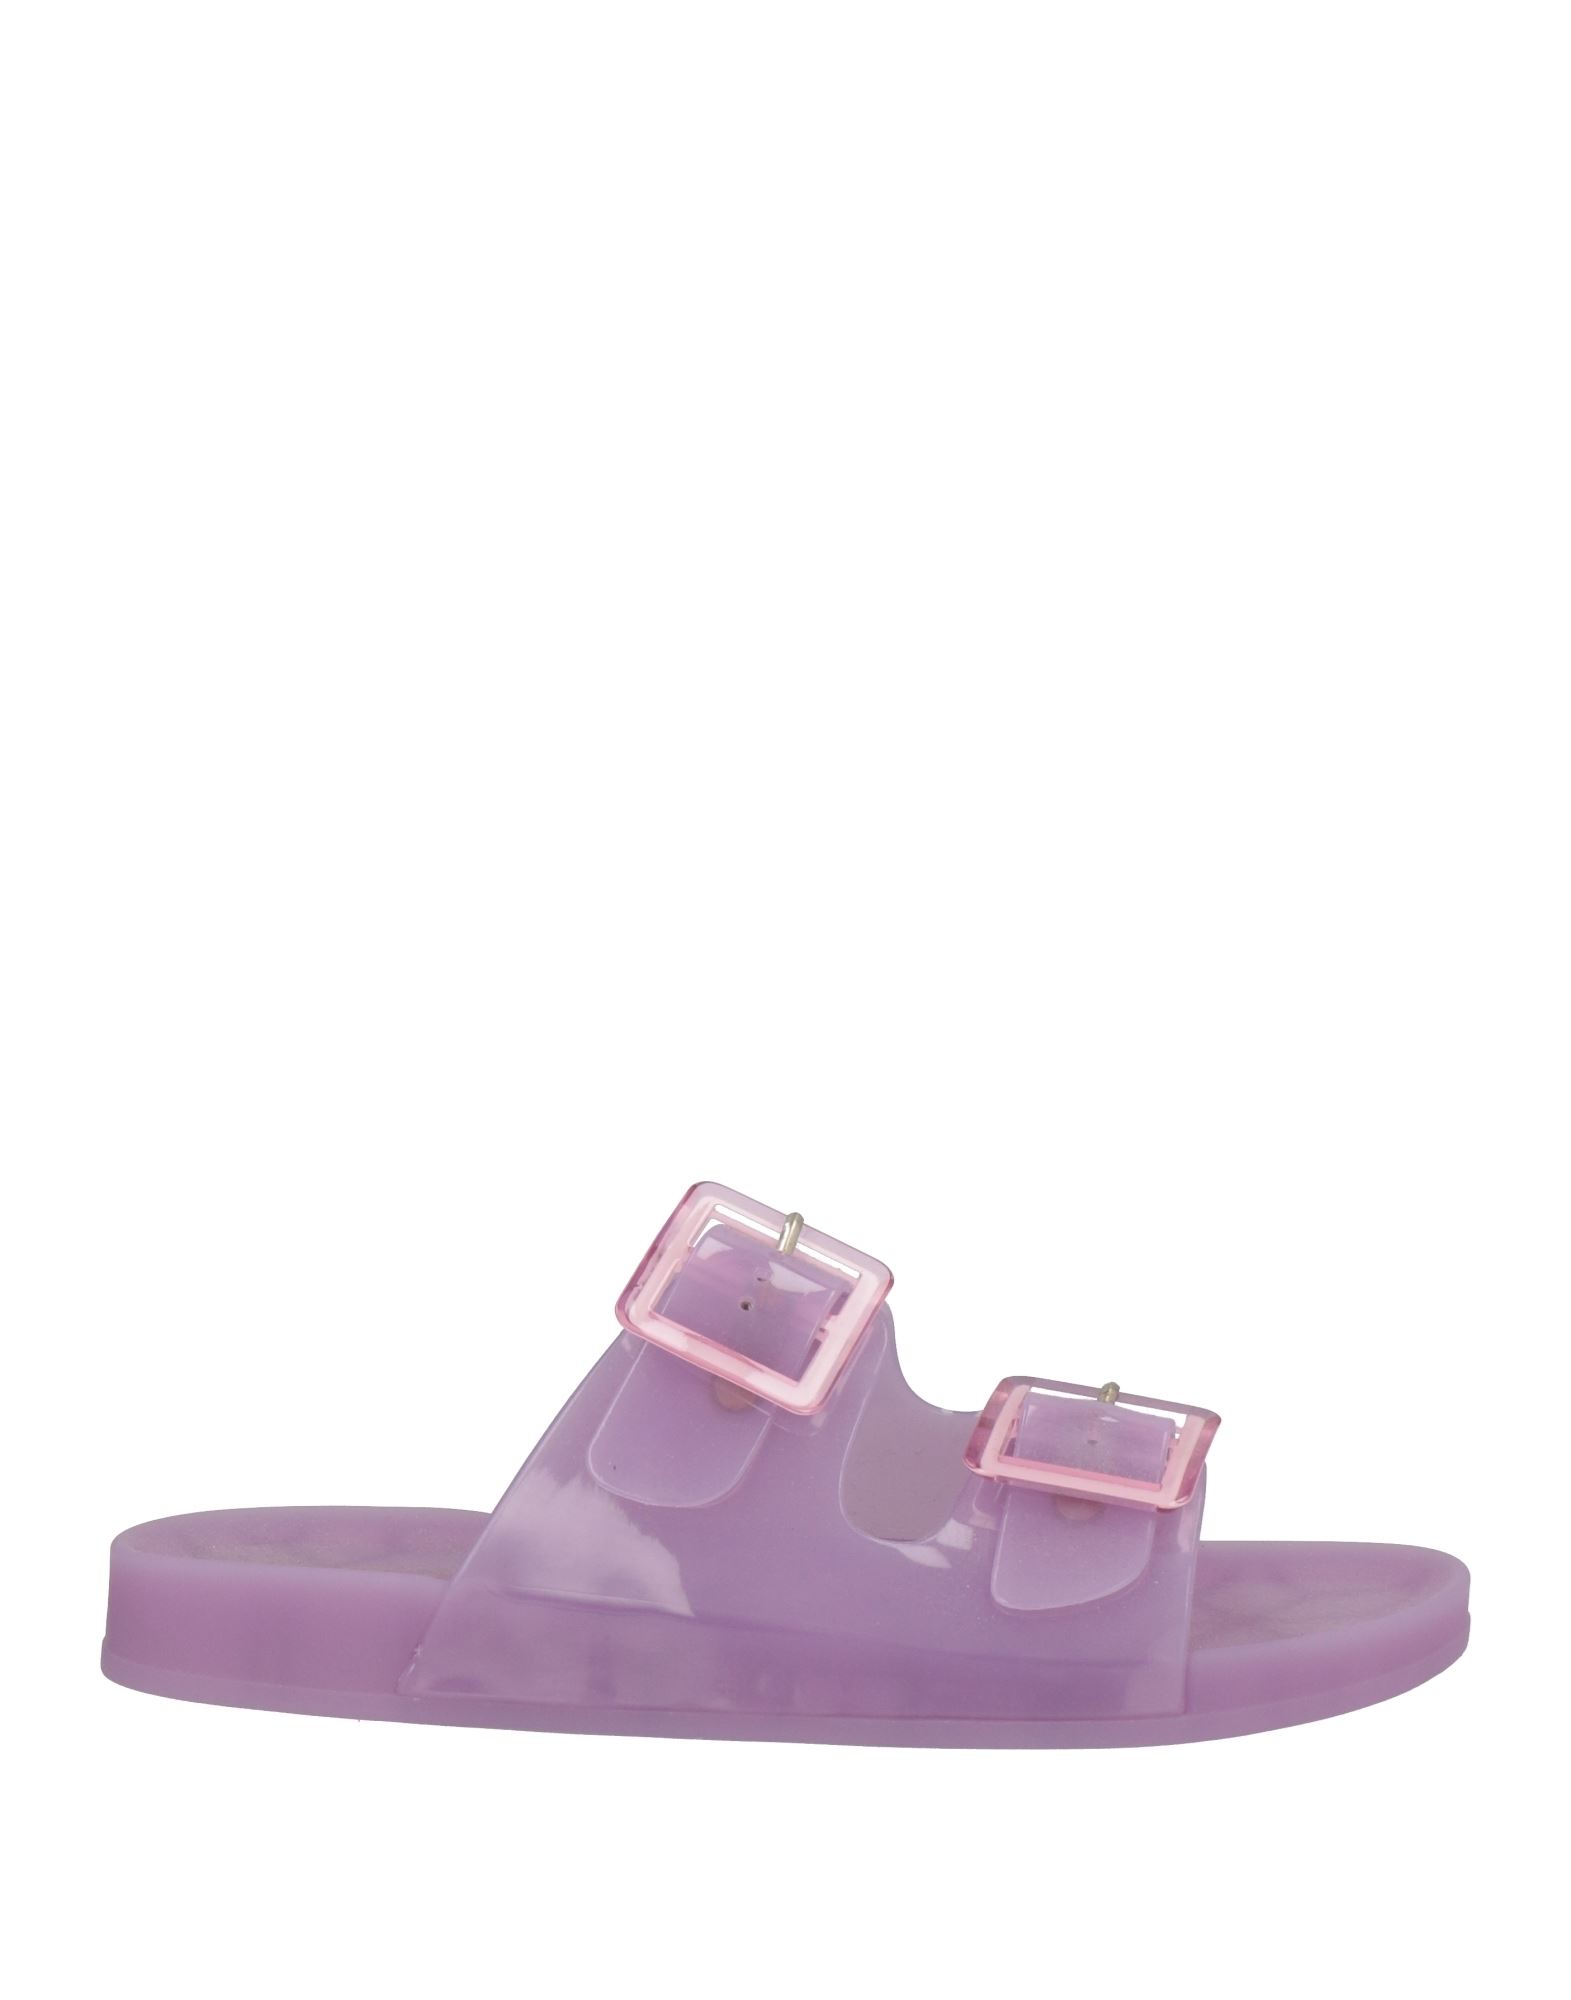 Shop Colors Of California Woman Sandals Light Purple Size 6 Rubber